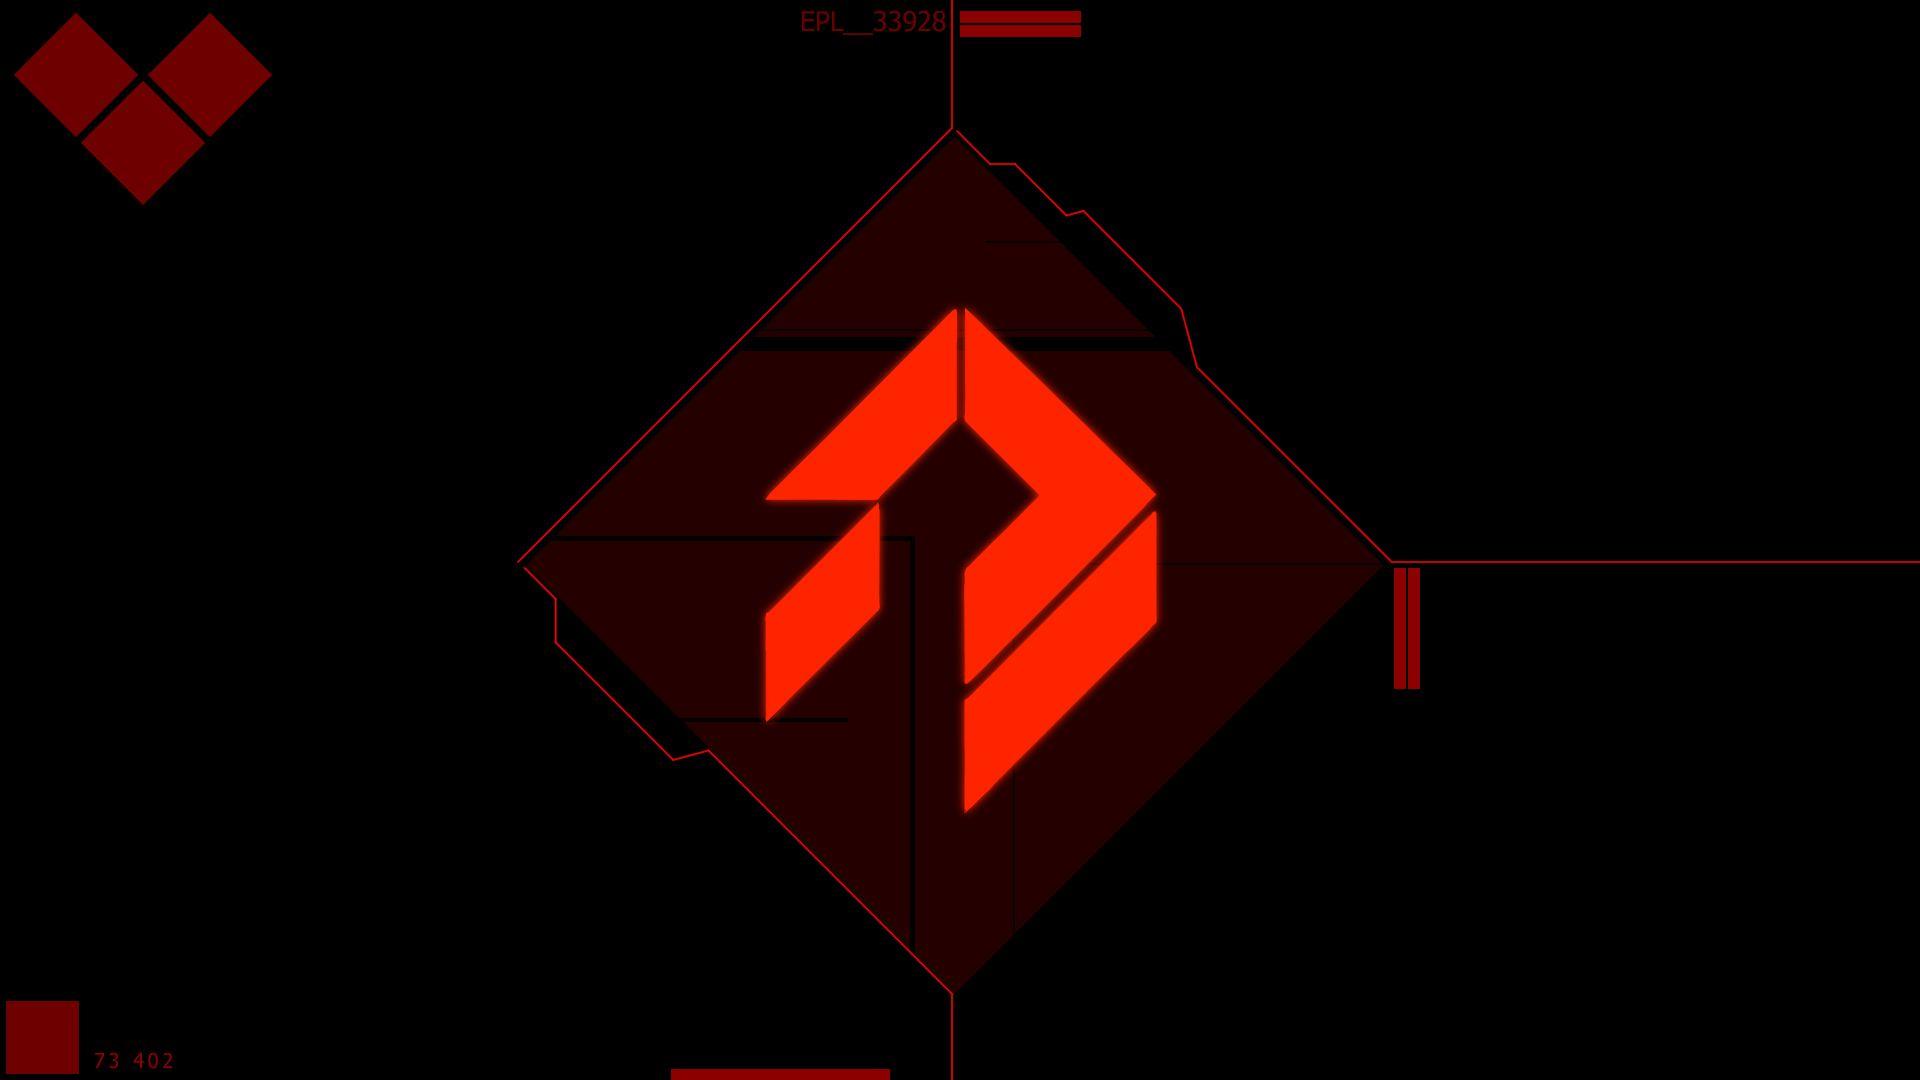 Red Destiny Logo - I made a SIVA Wallpaper : DestinyTheGame